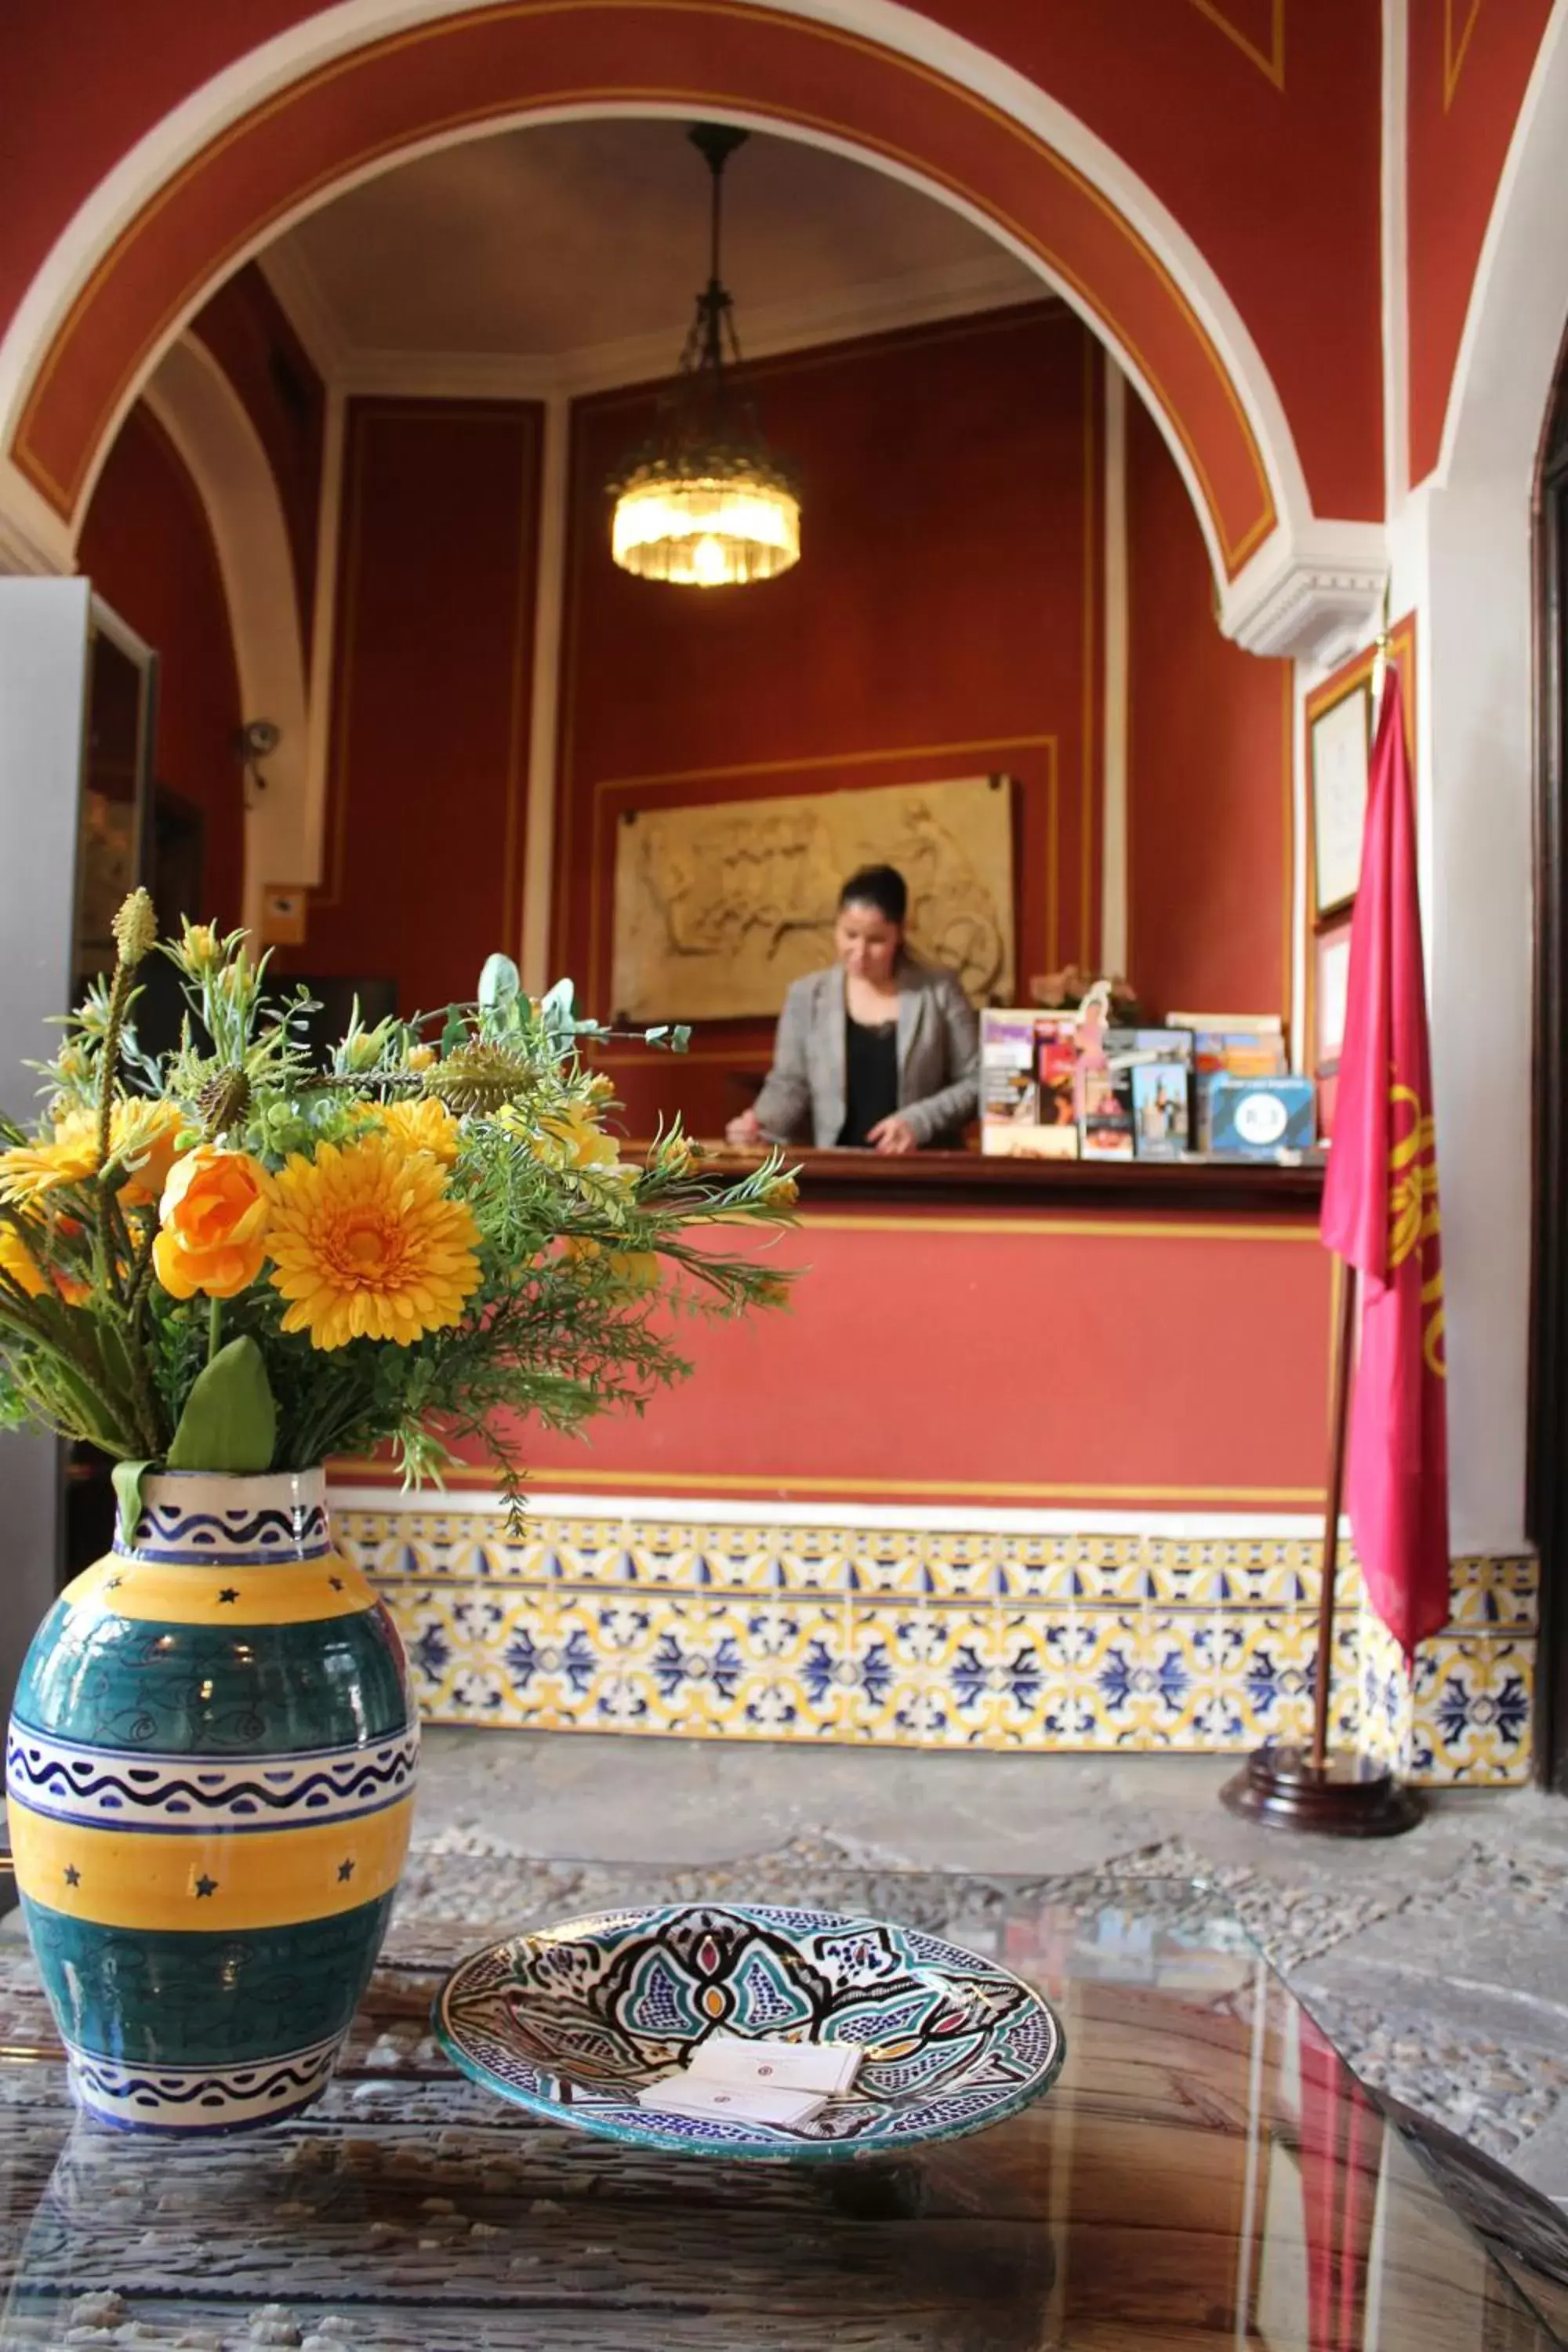 Staff in Hotel Casa Imperial